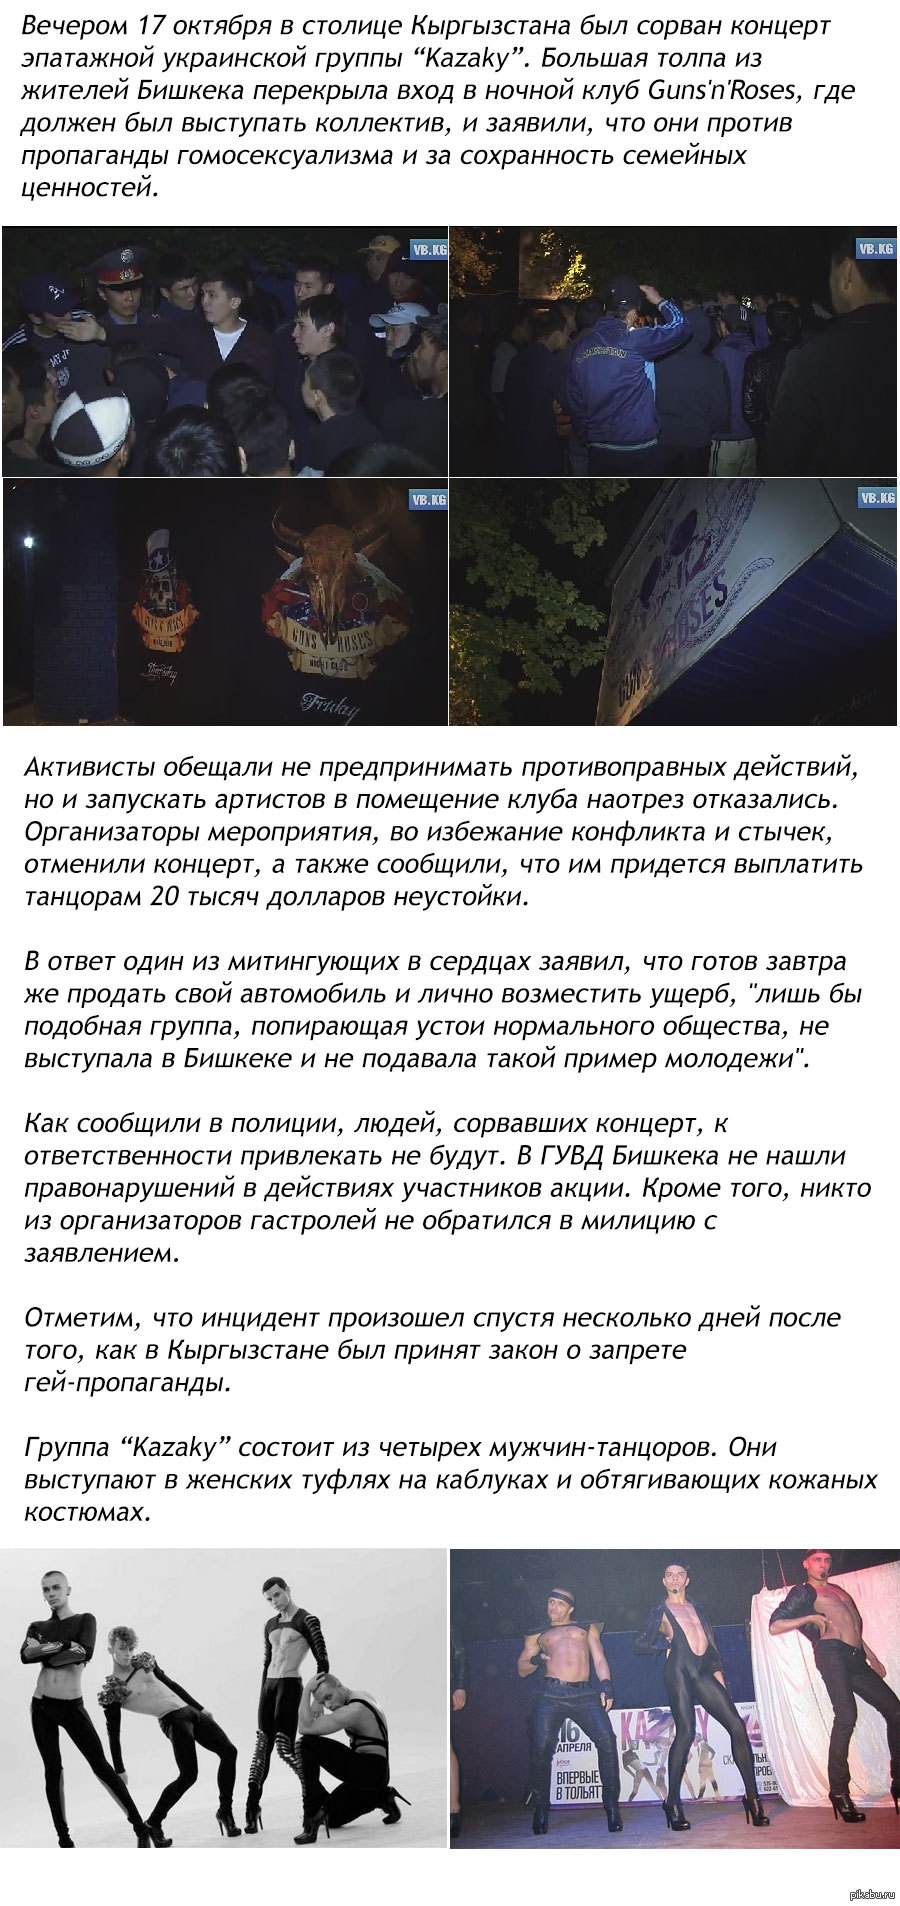 Жители Бишкека сорвали концерт украинской группы - за гей-пропаганду |  Пикабу